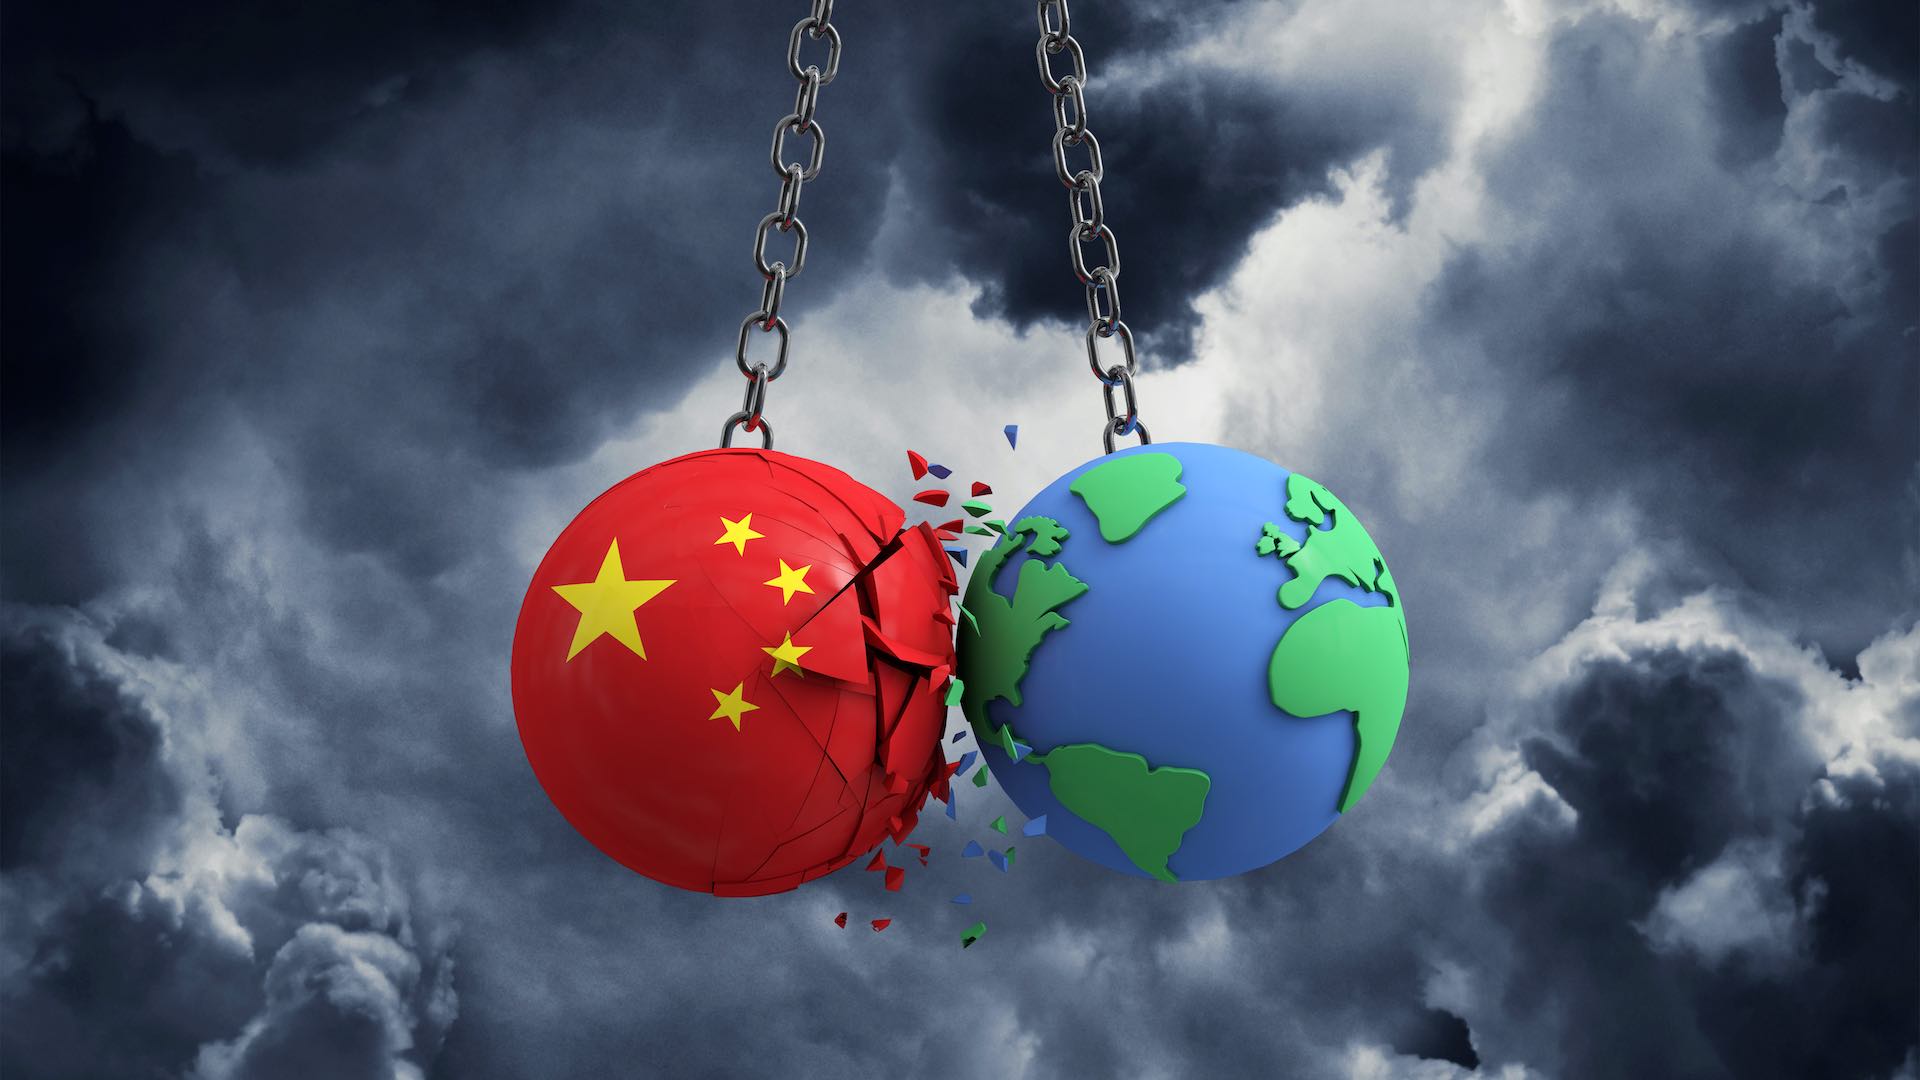 भू-राजनीतिक दबाव चीन की आत्मनिर्भरता की खोज में बाधा डालते हैं